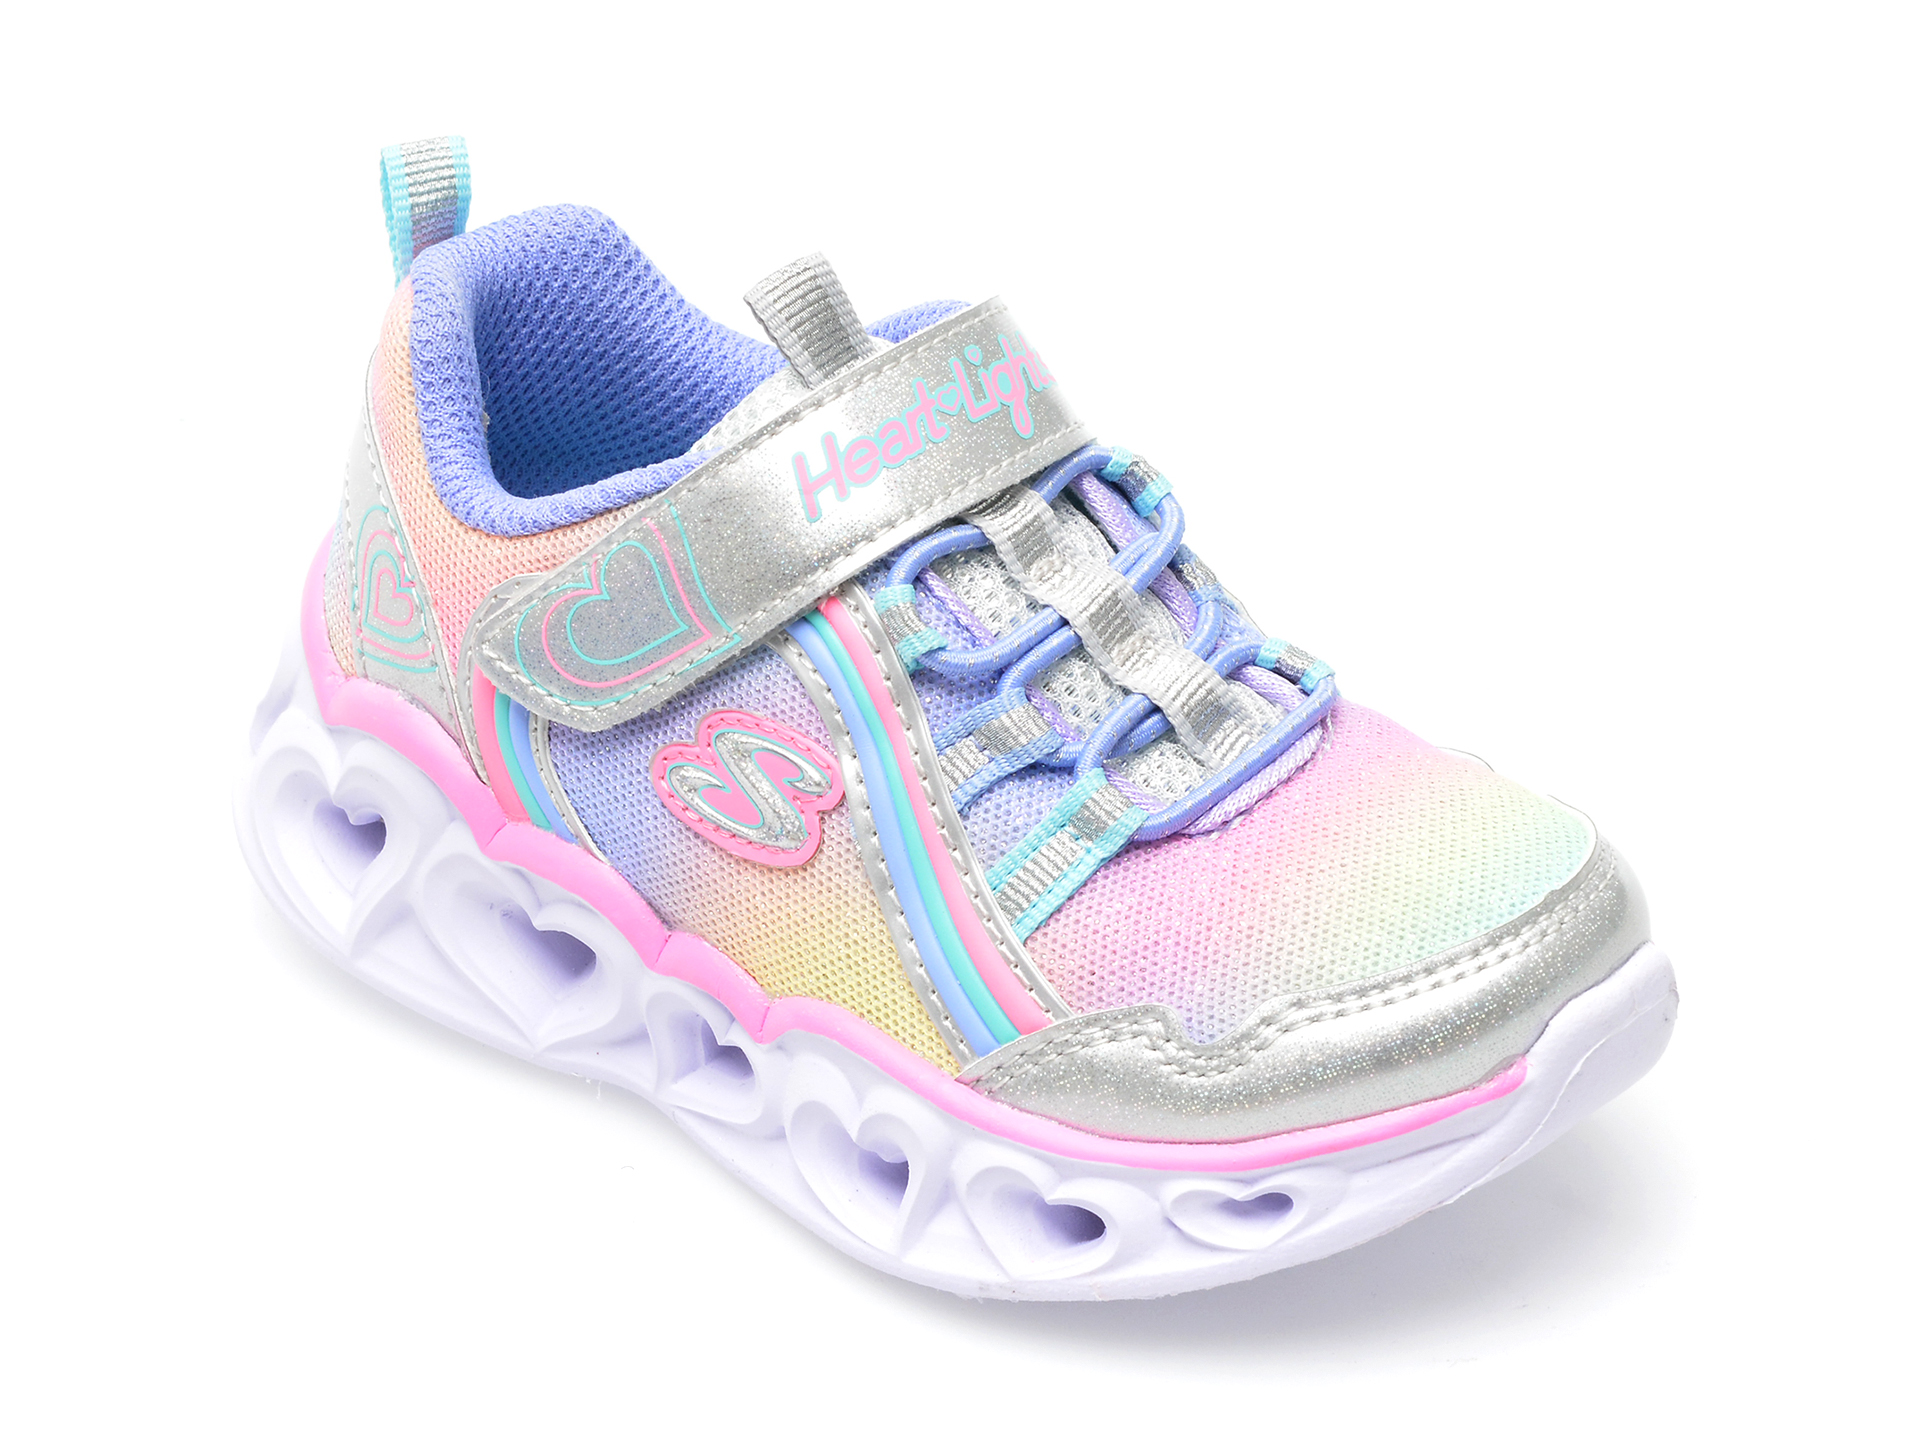 Pantofi sport SKECHERS multicolor, HEART LIGHTS, din material textil si piele ecologica /copii/incaltaminte